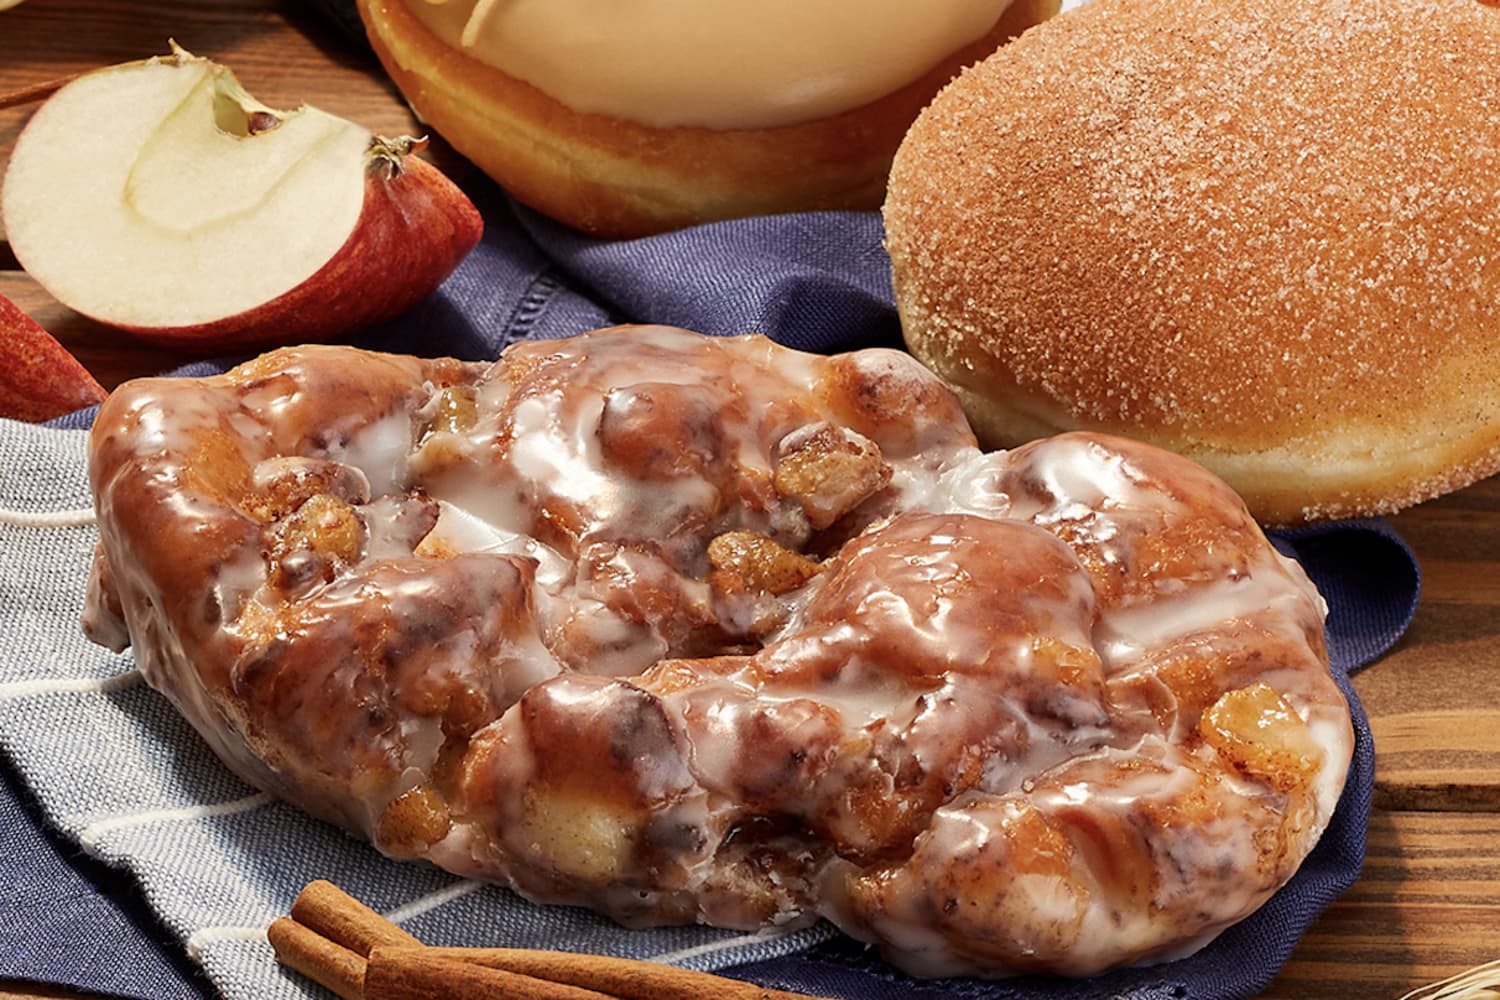 Bánh rán theo chủ đề mùa thu mới nhất của Krispy Kreme bao gồm một phần nhân táo